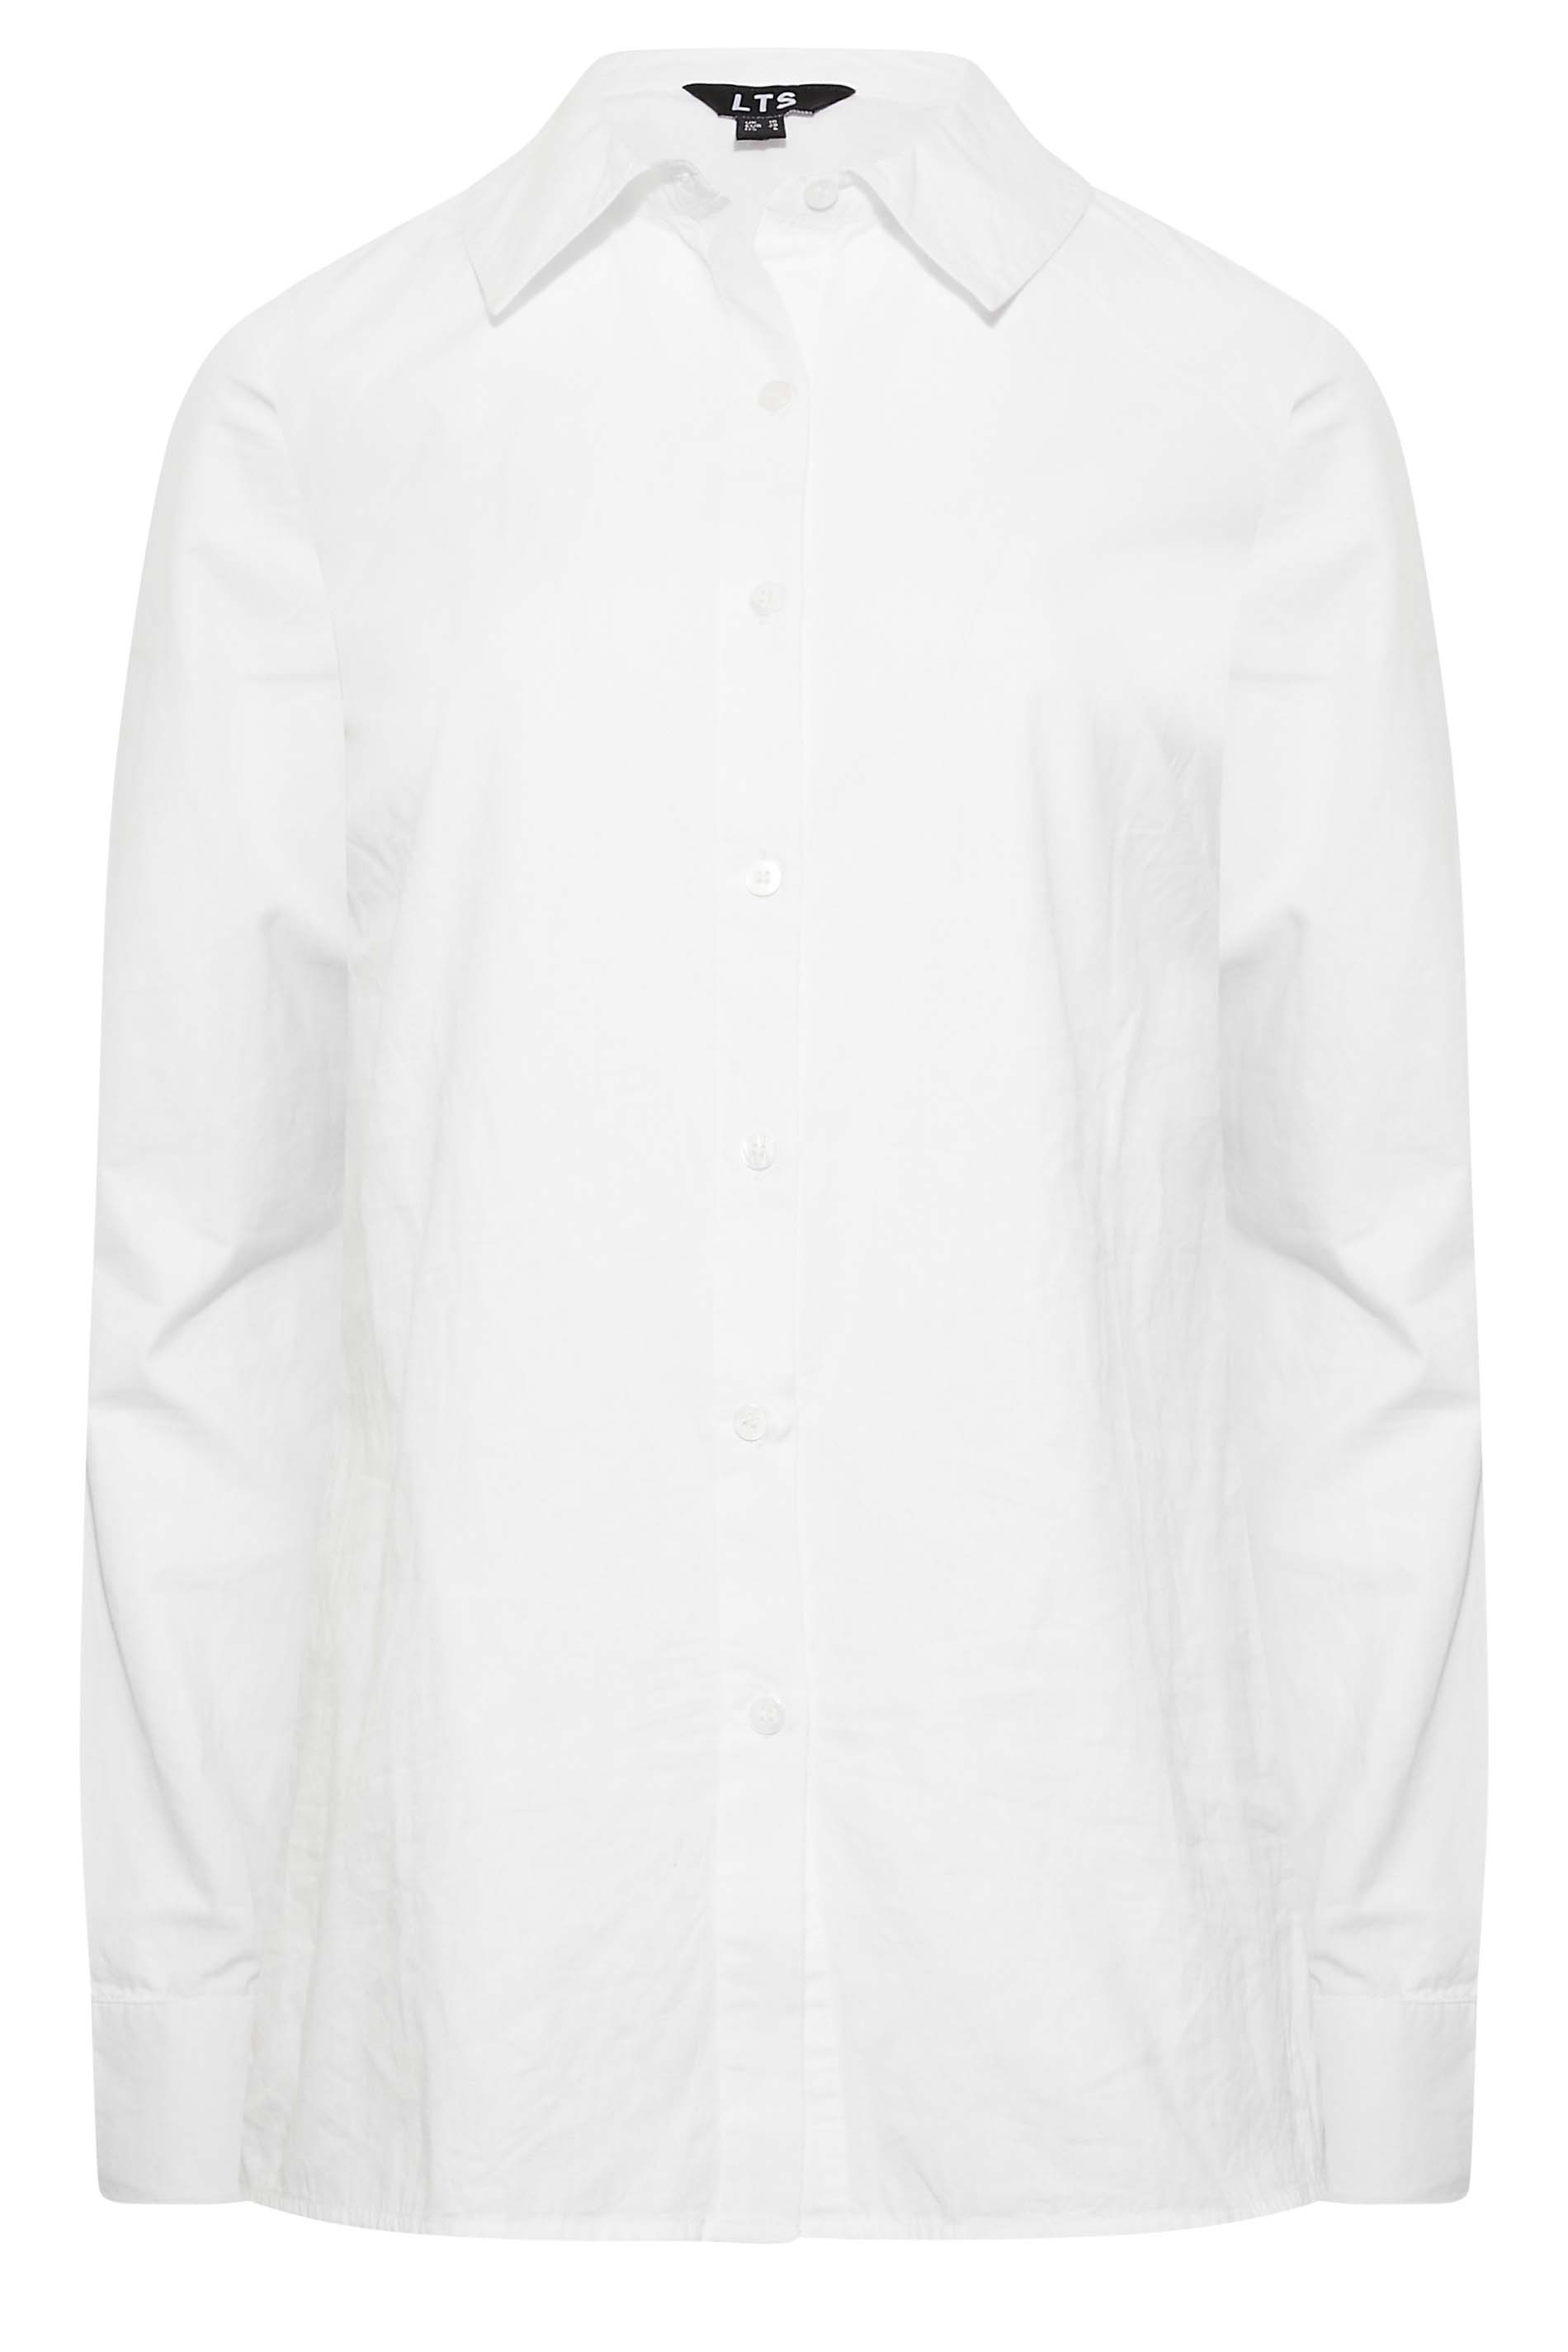 Tall Women's LTS White Cotton Shirt | Long Tall Sally